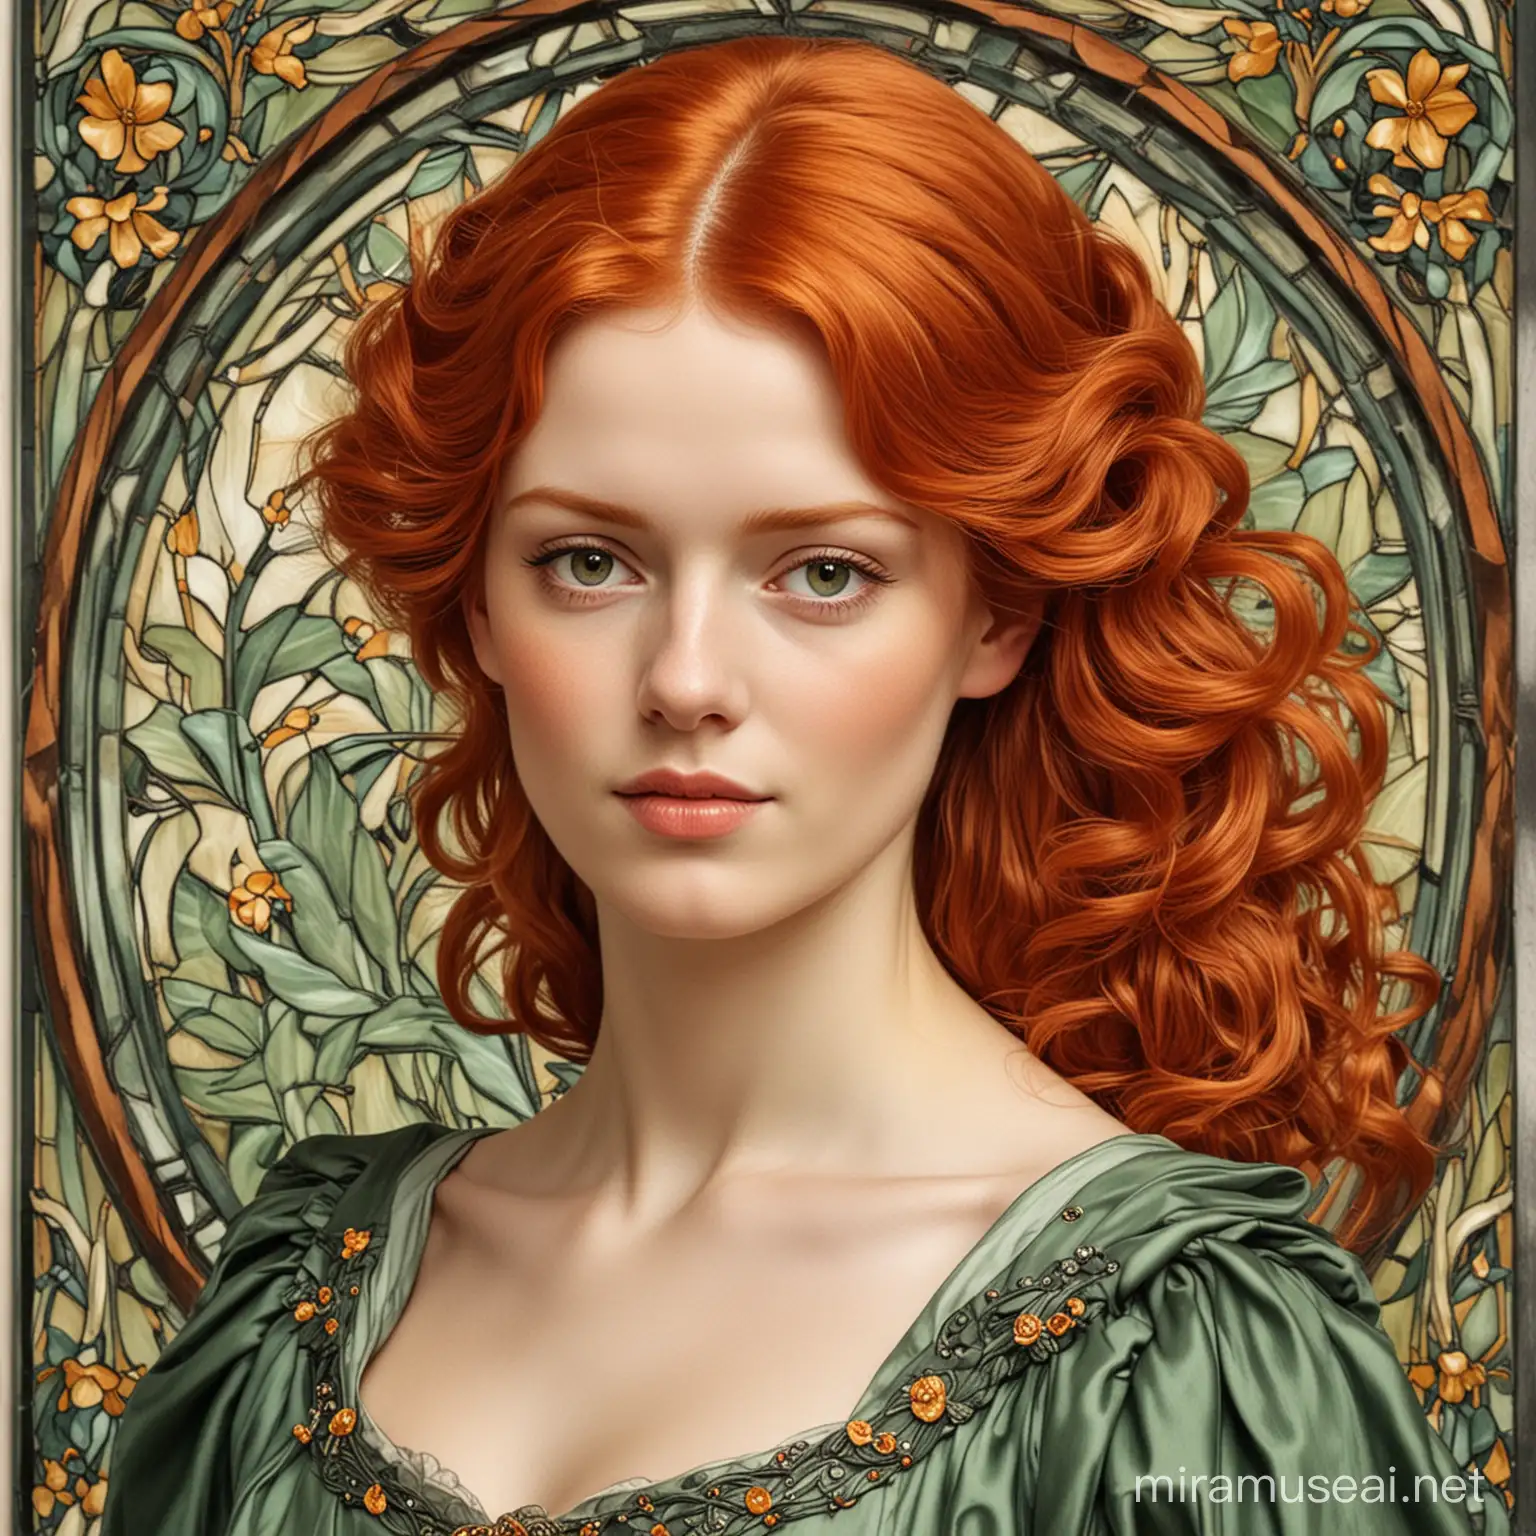 redheaded woman jugendstil style